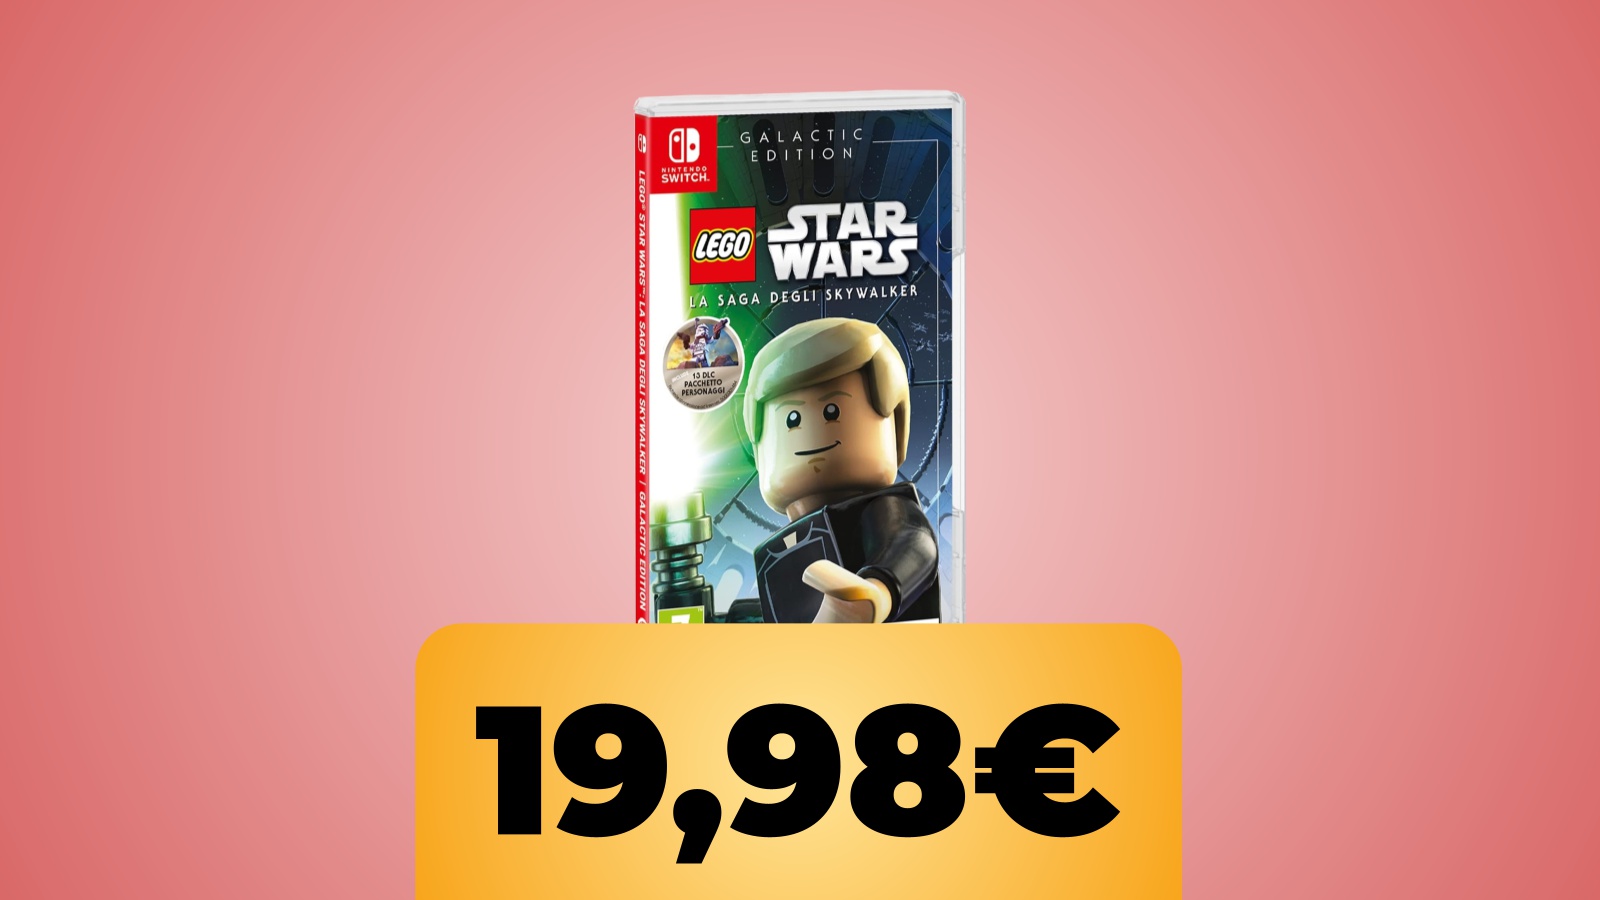 LEGO Star Wars La Saga degli Skywalker Galactic Edition per Switch al prezzo minimo su Amazon